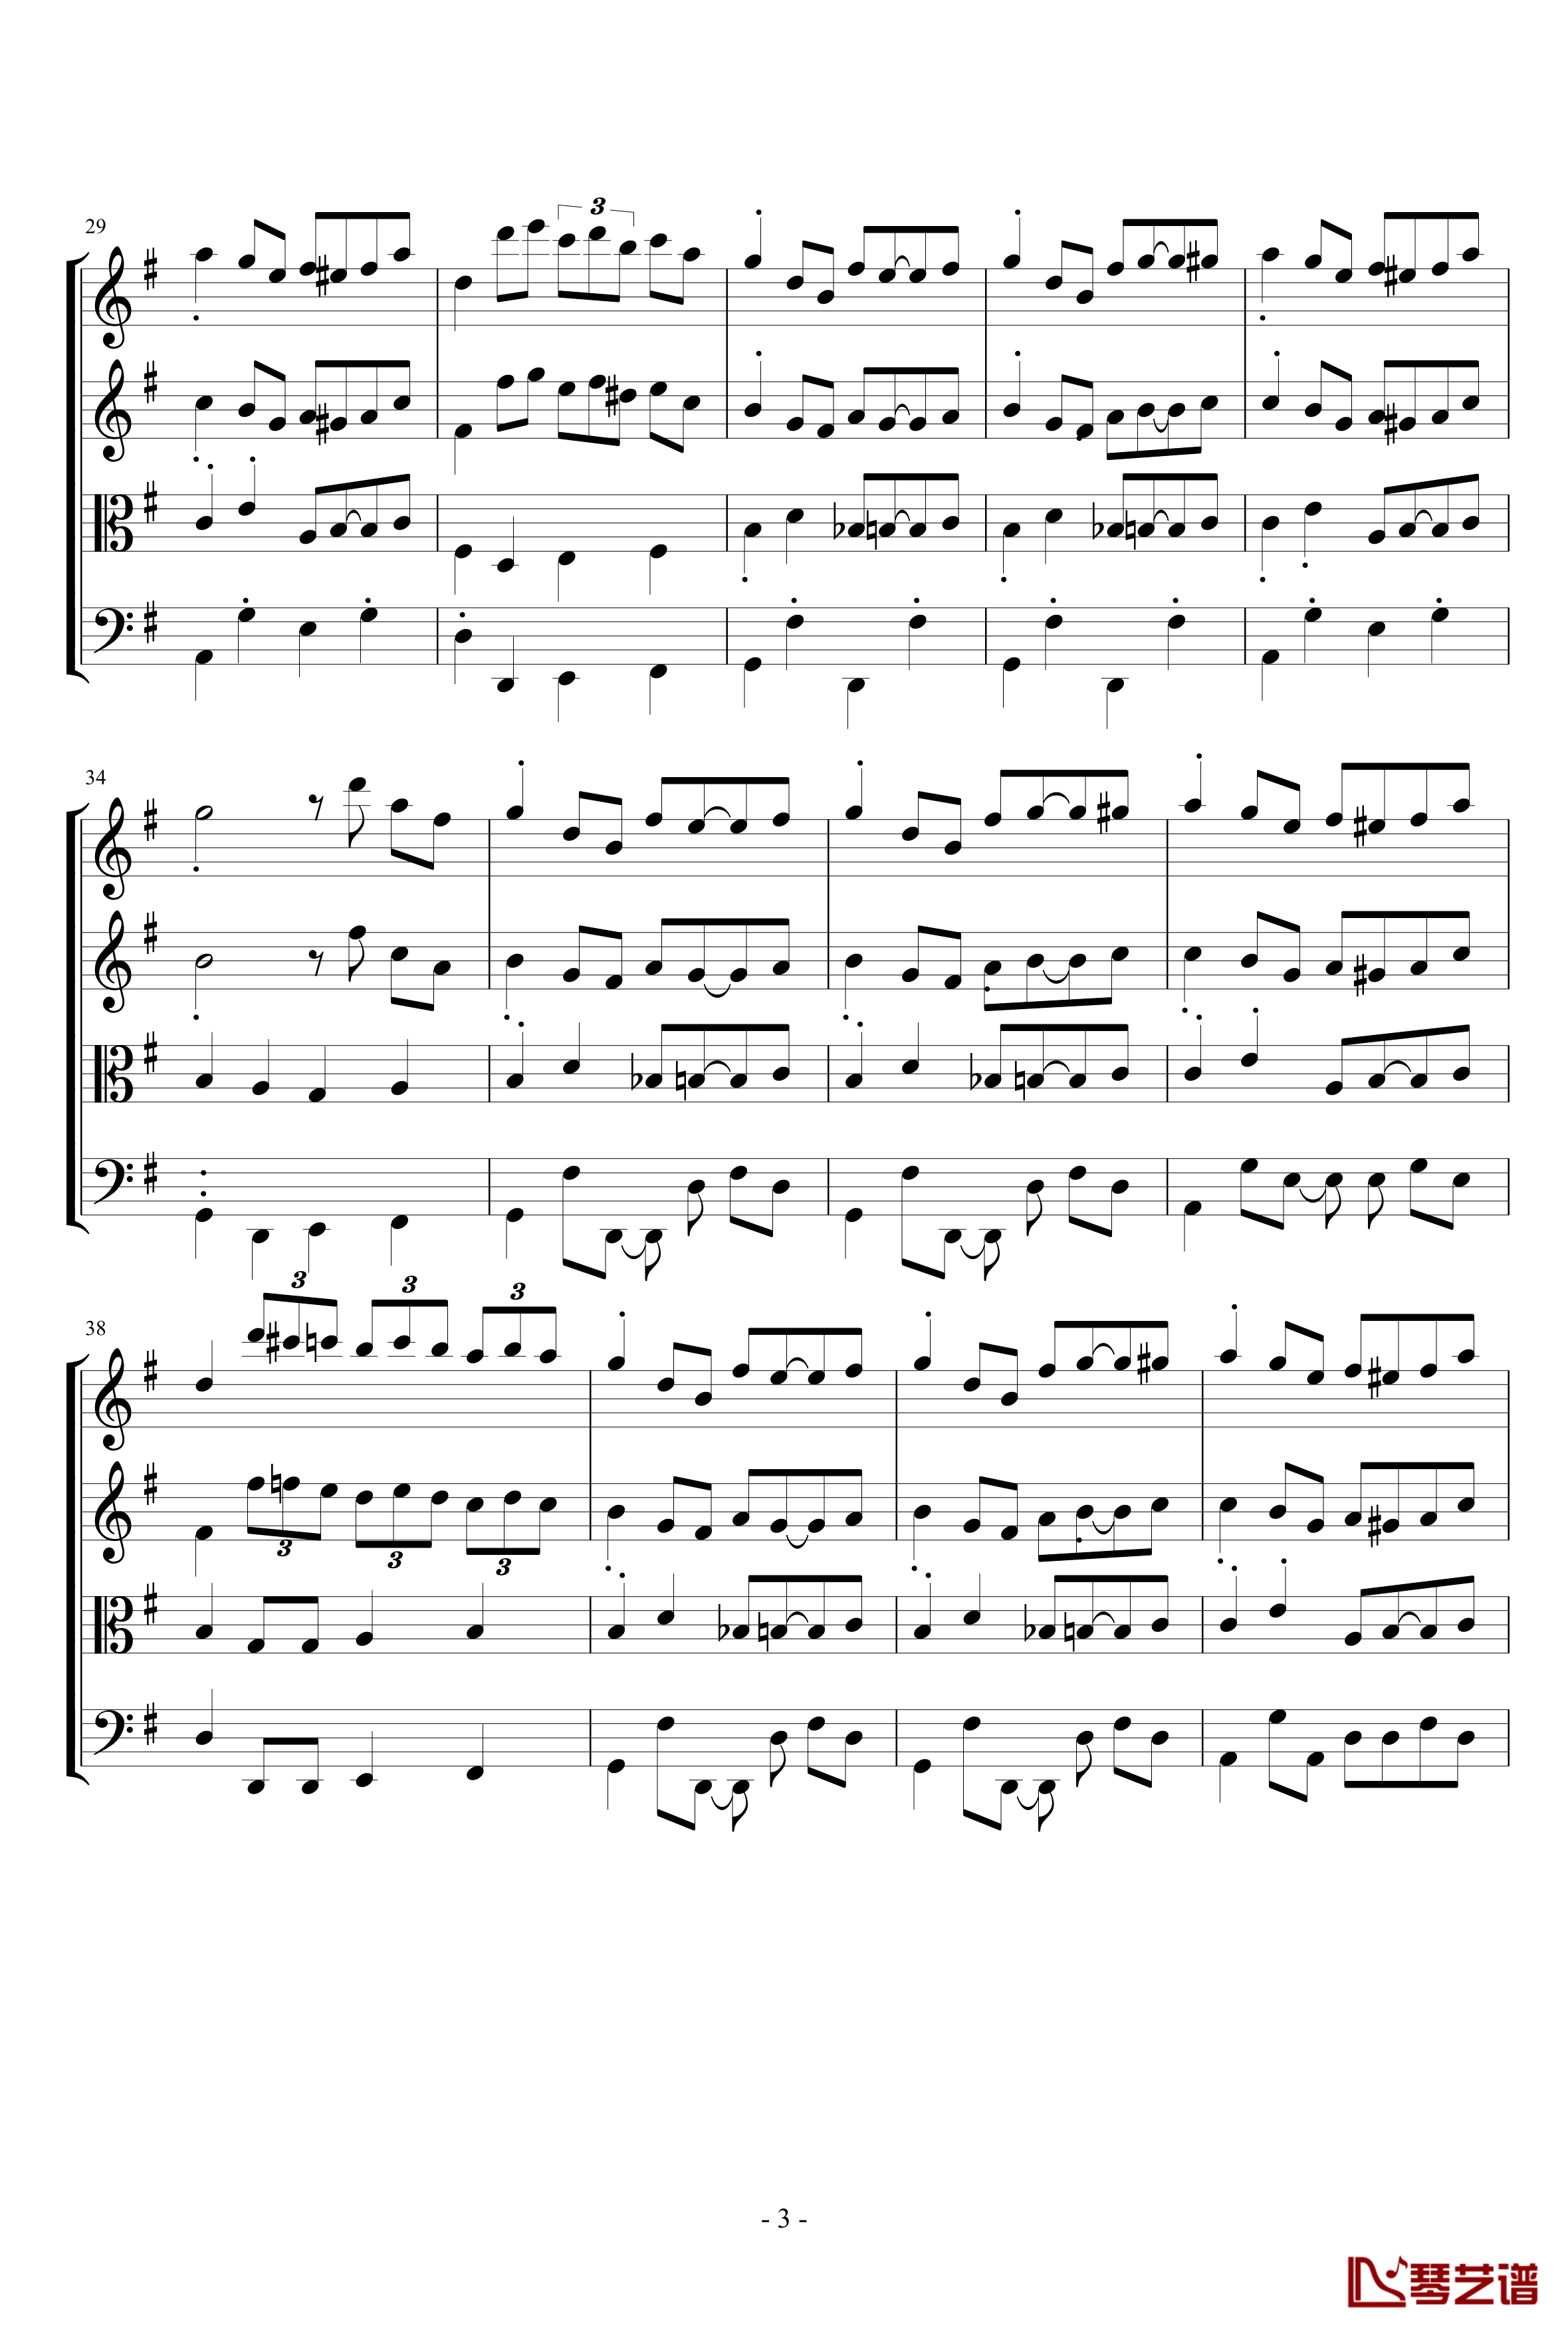 苏格兰垂耳兔钢琴谱-四重奏版-EdwardLeon3